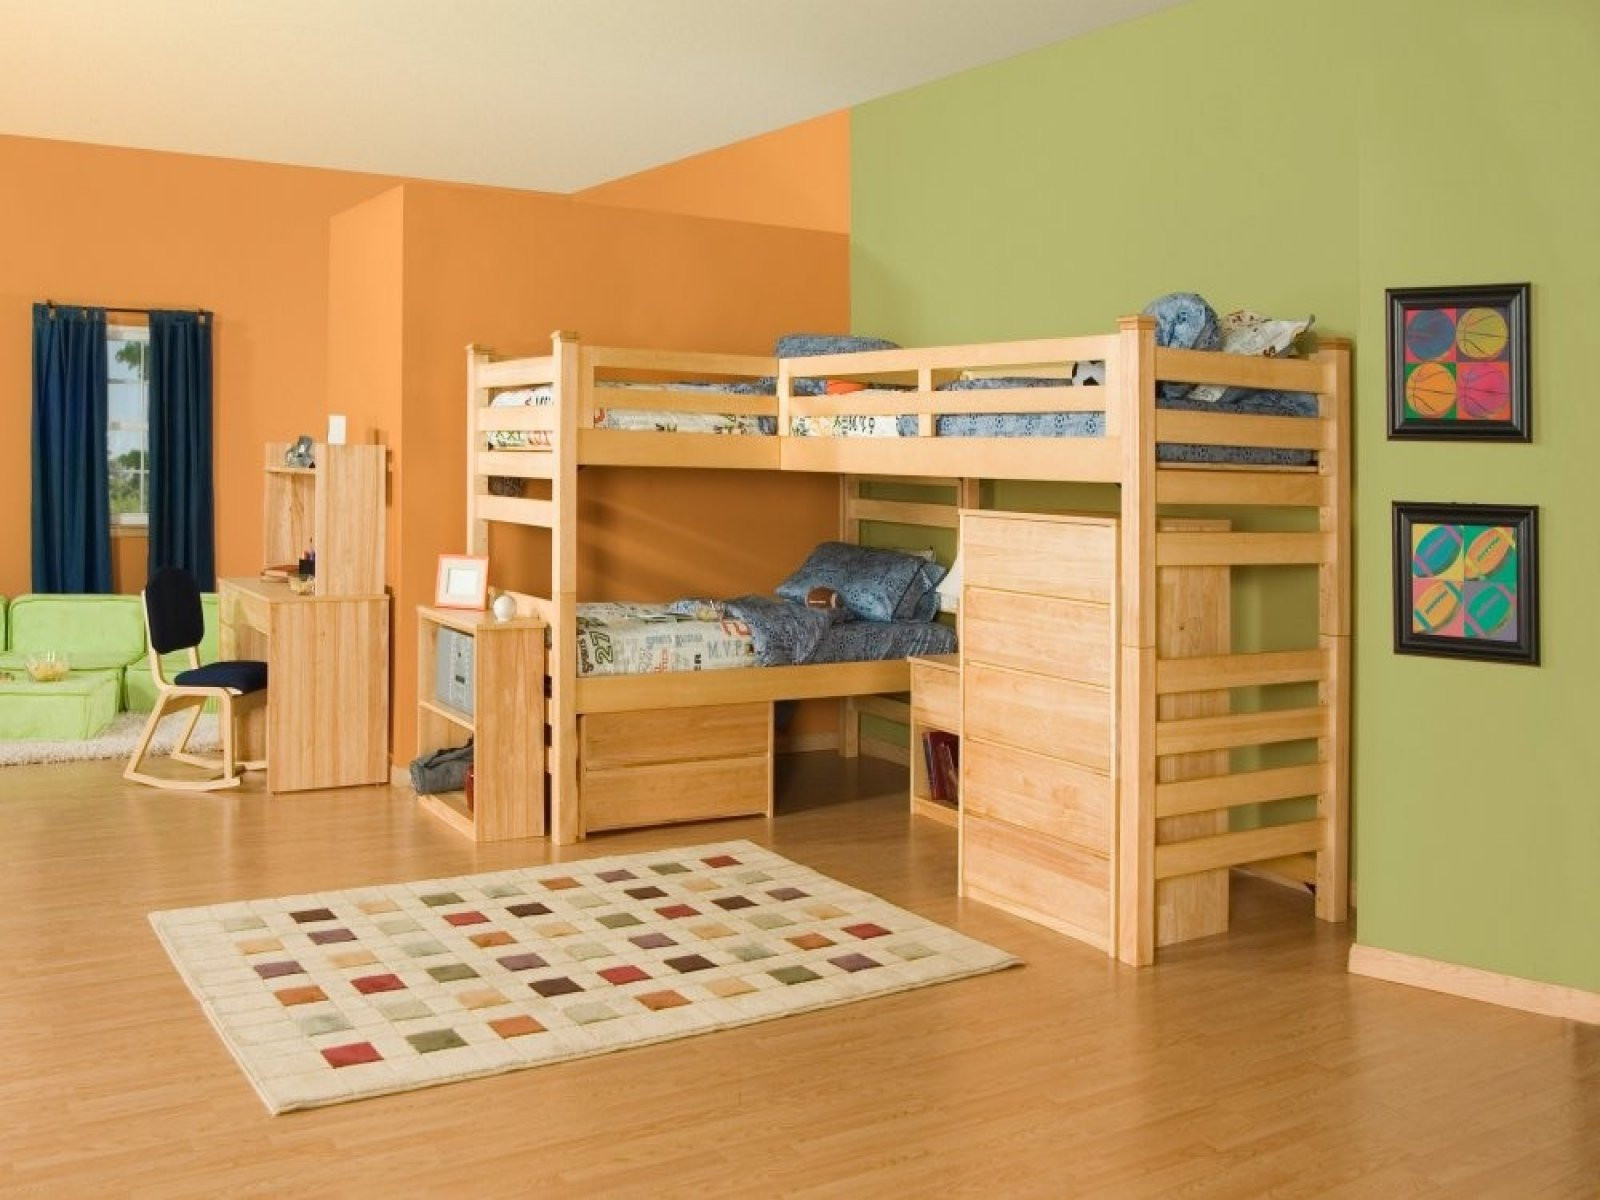 Bedroom Set For Boy
 Boys Bedroom Sets Best Tips to Know Home Furniture Design